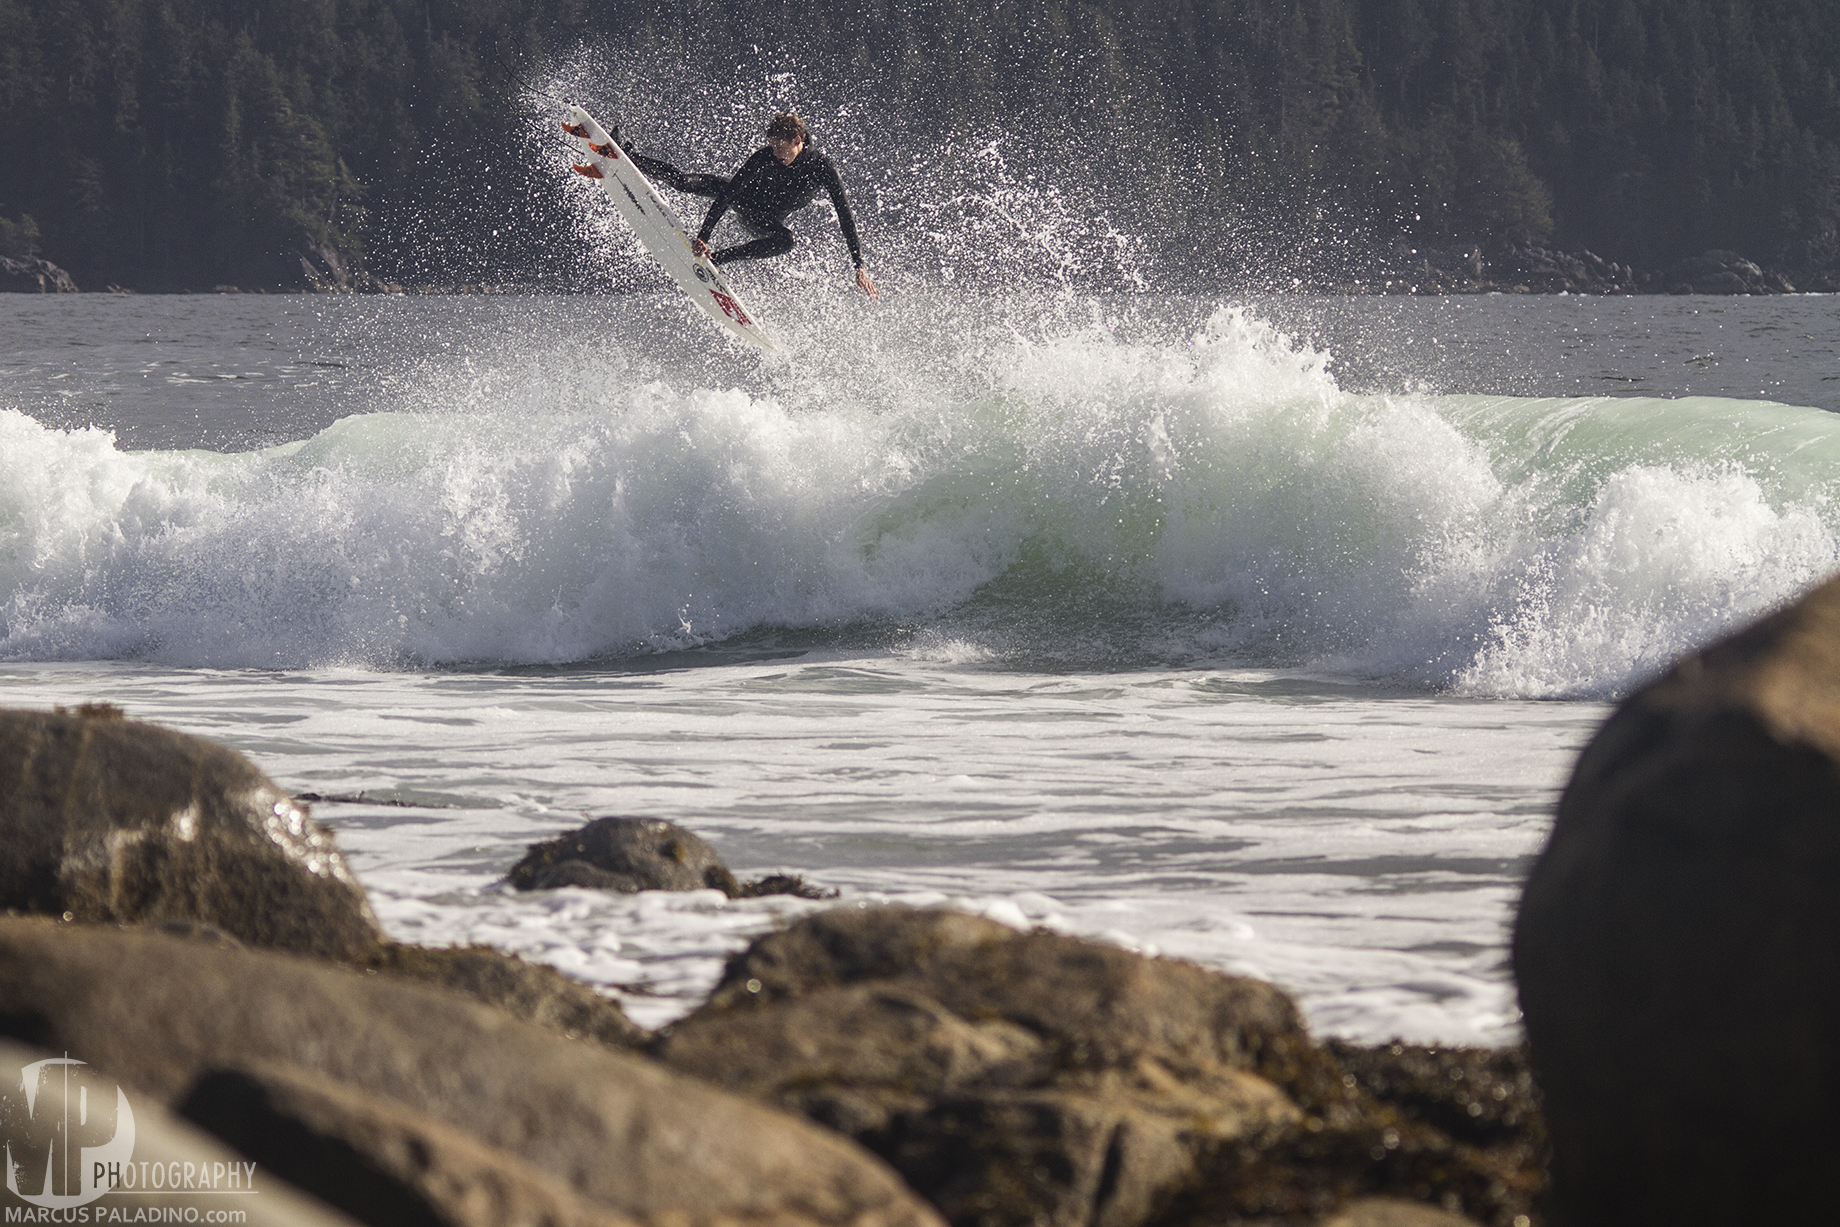 Michael Darling Spring/Summer 2014 surf edit